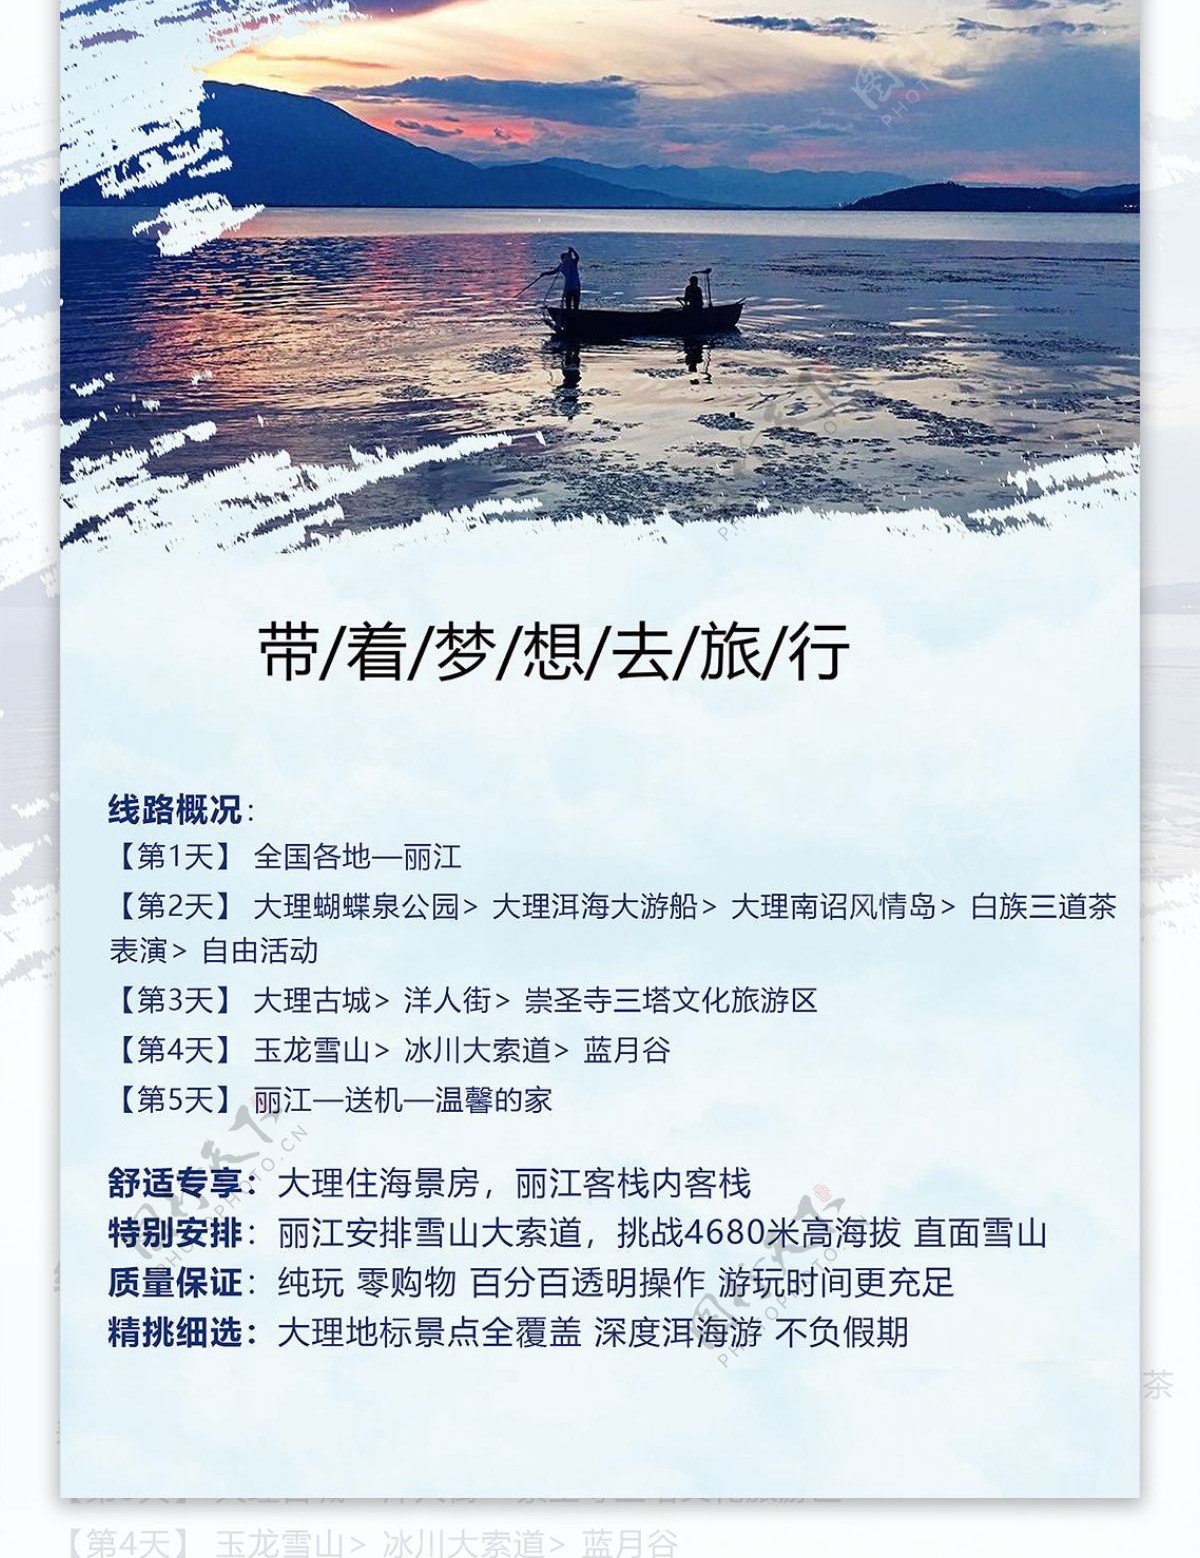 云南旅游展架海报